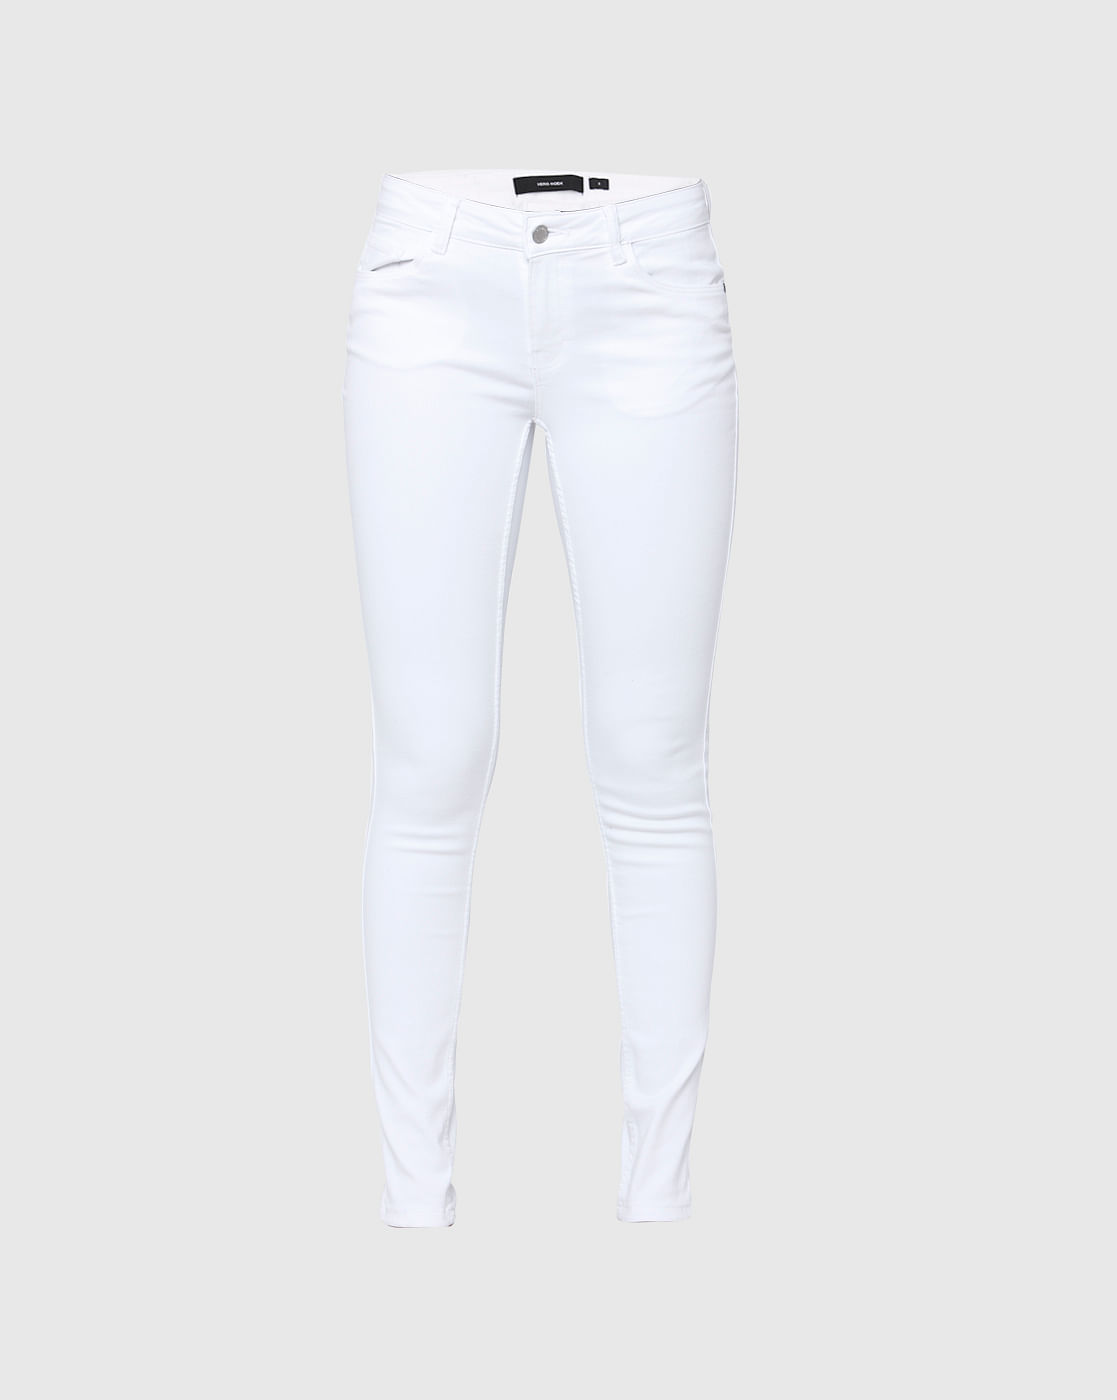 vero moda white jeans